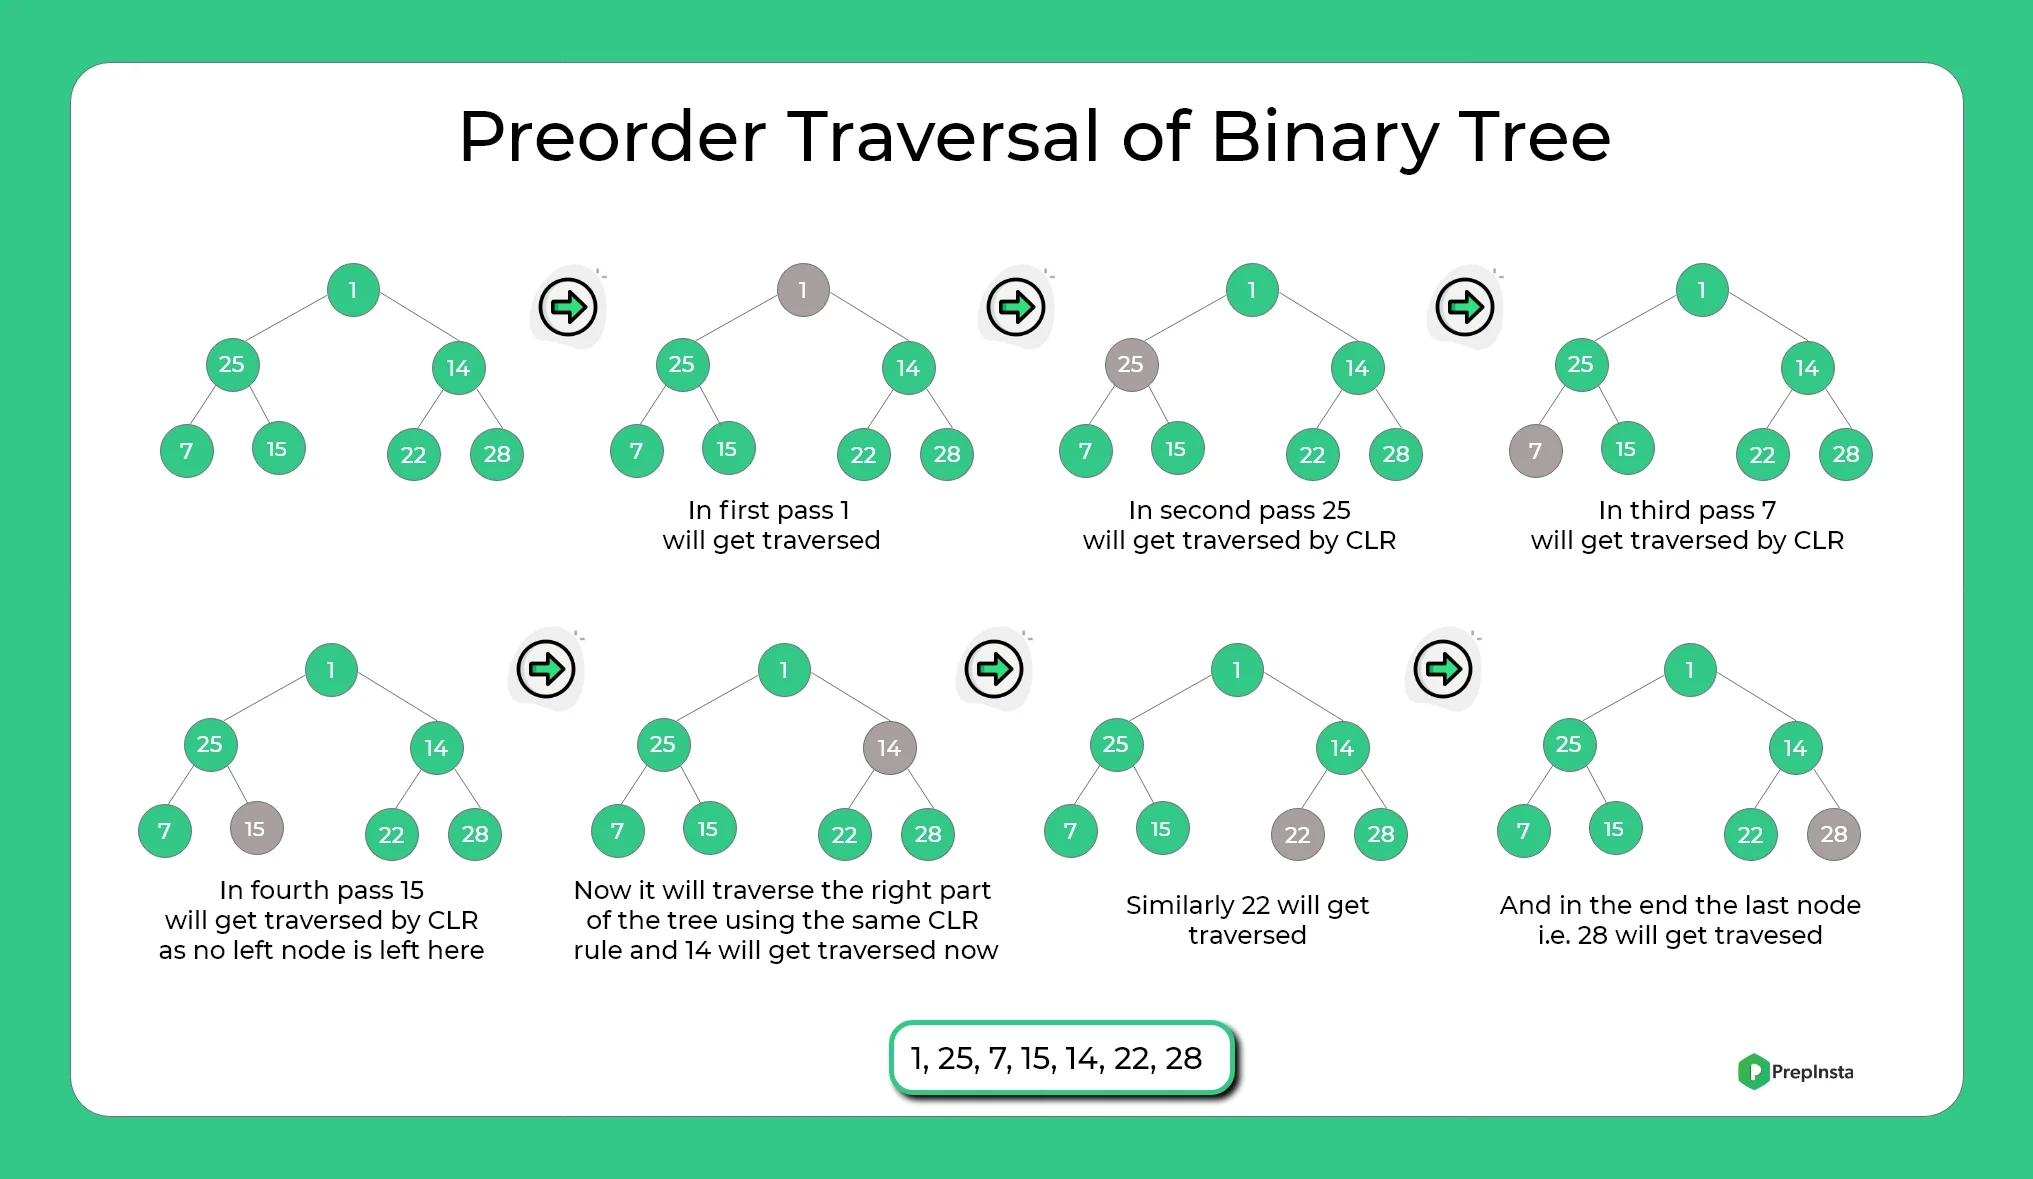 PreOrder Tree Traversal in Binary Tree Explaination